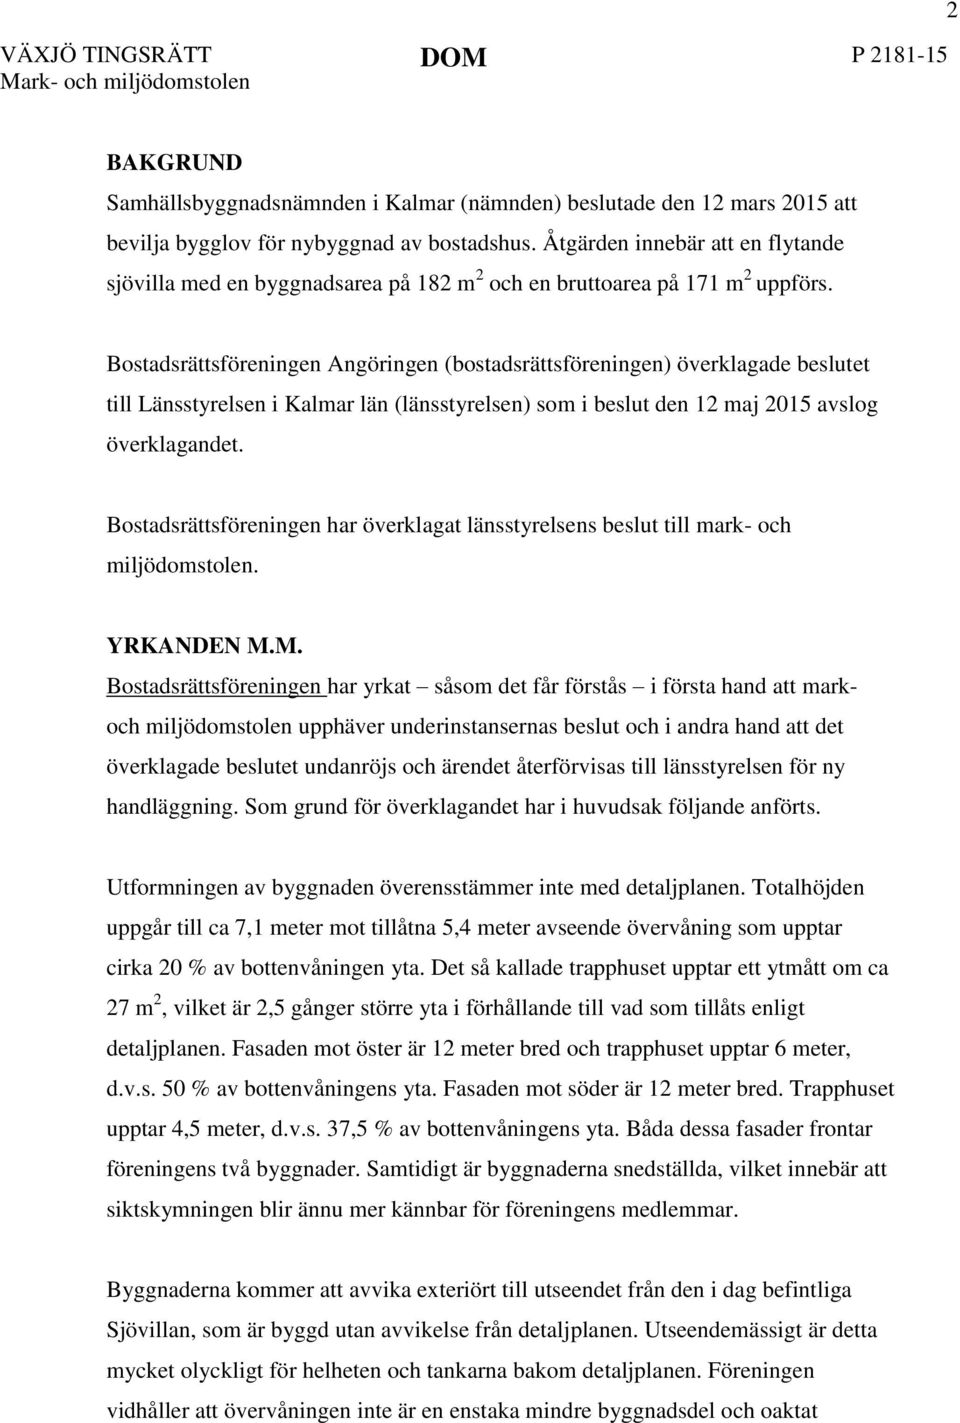 Bostadsrättsföreningen Angöringen (bostadsrättsföreningen) överklagade beslutet till Länsstyrelsen i Kalmar län (länsstyrelsen) som i beslut den 12 maj 2015 avslog överklagandet.